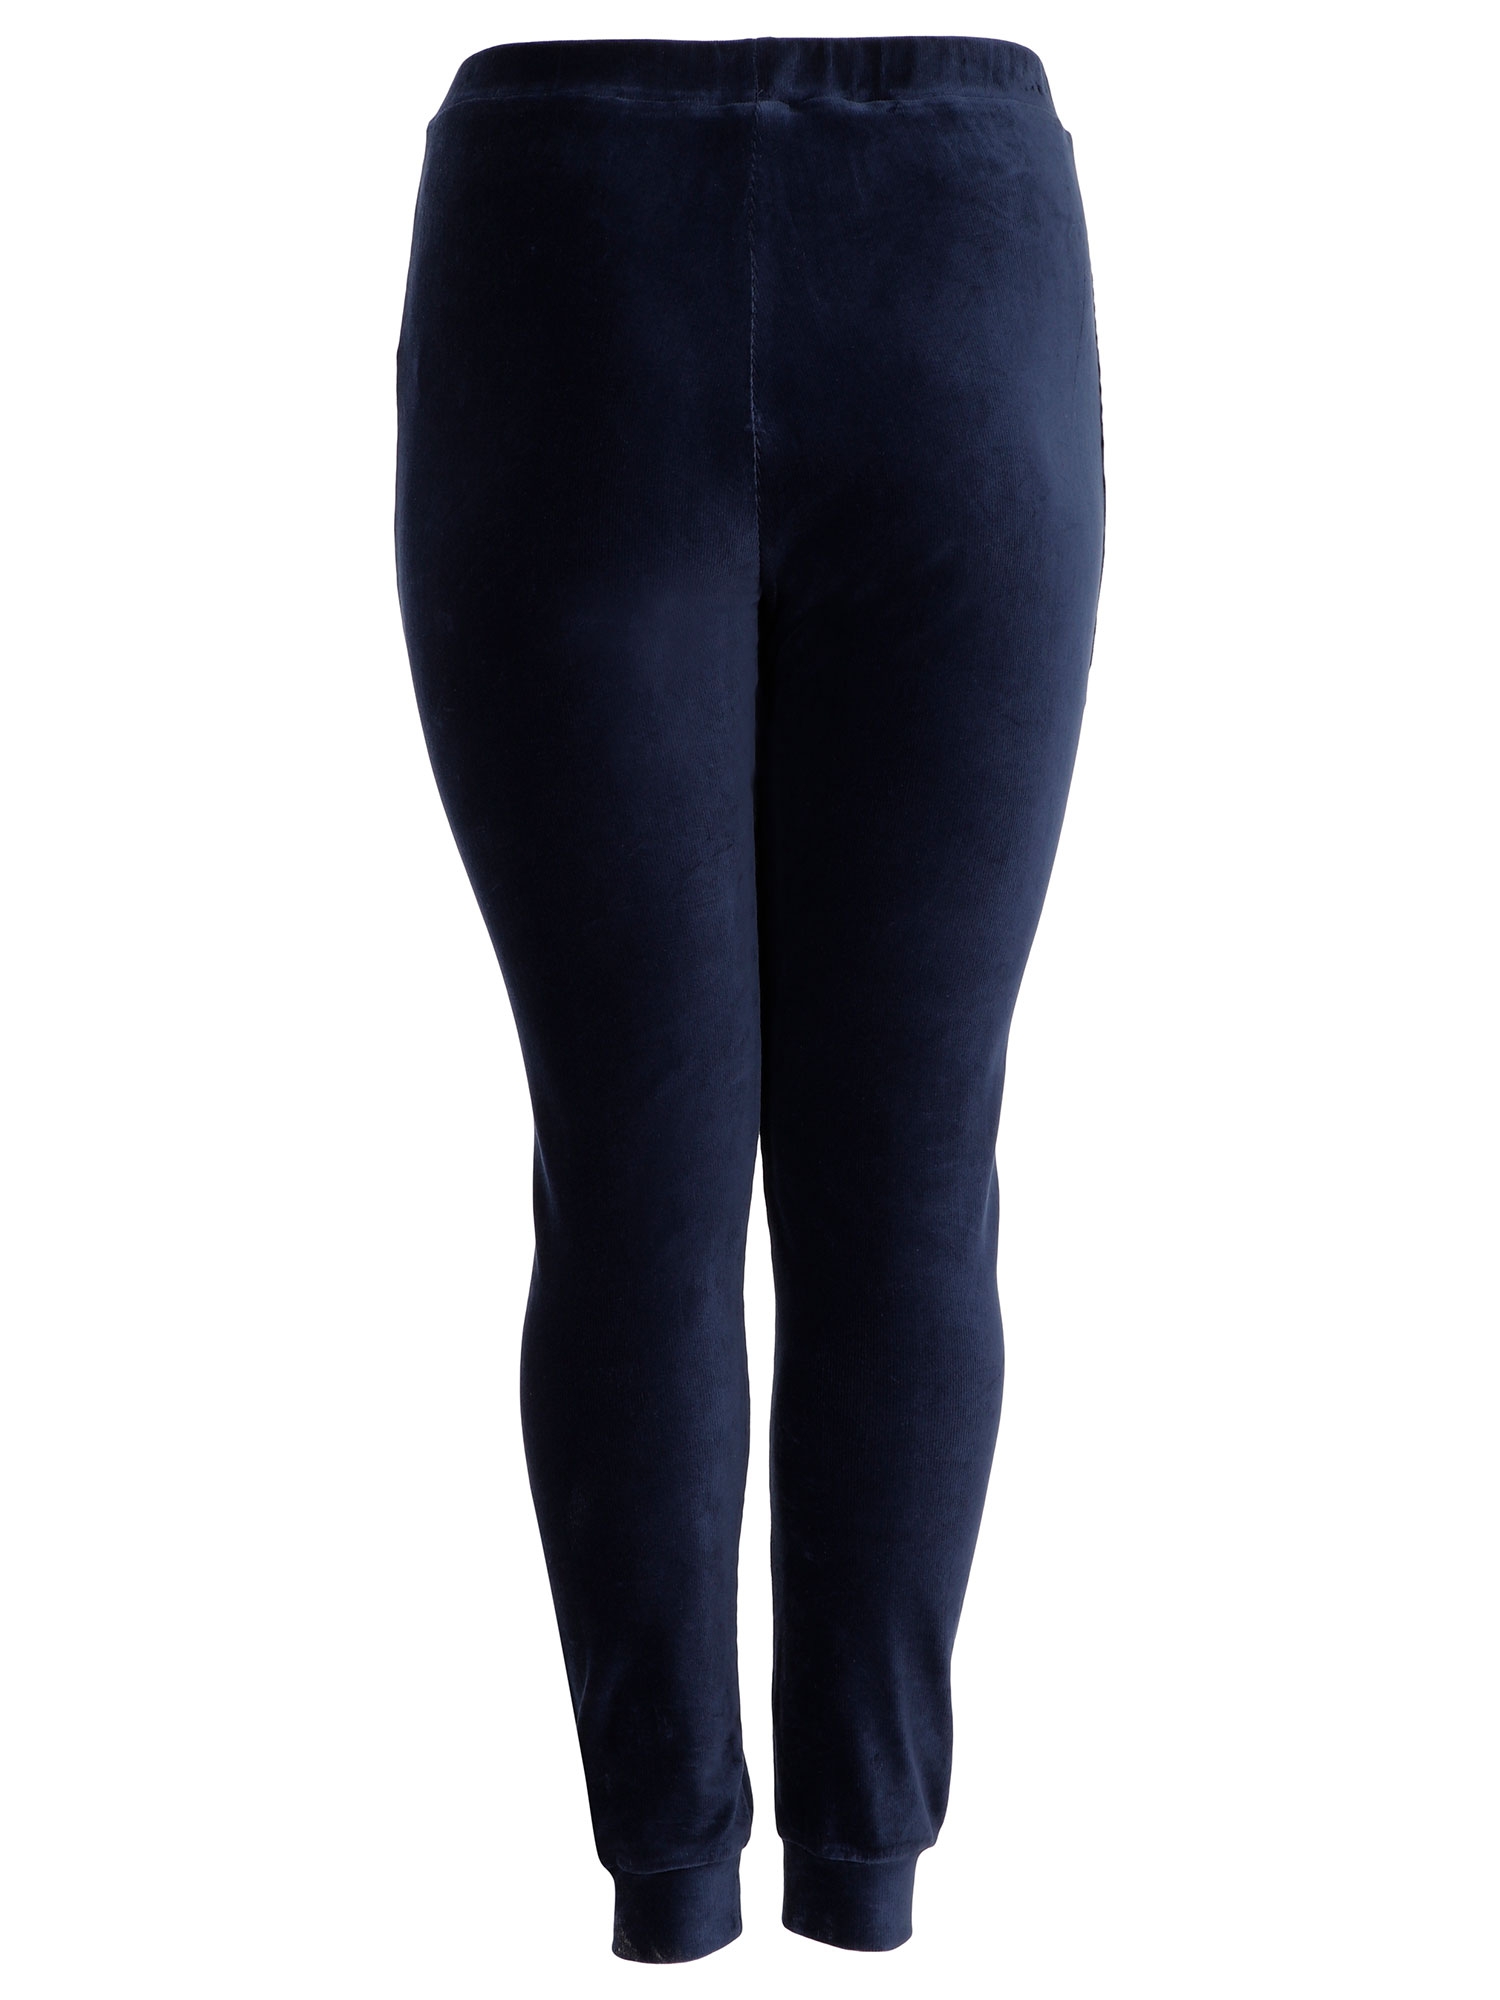 Mørkeblå bukser i blødt bomulds velour fra Aprico